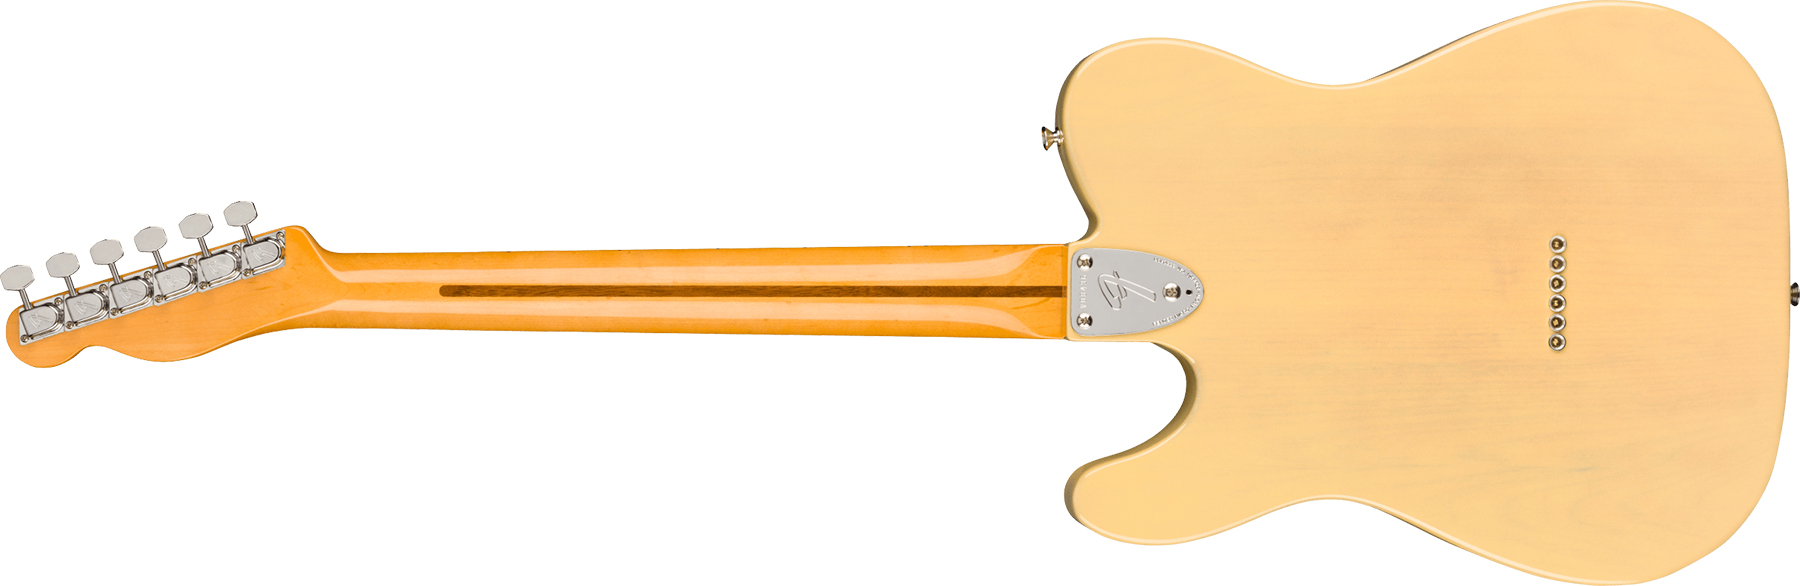 Fender Tele 70s Custom American Original Usa Sh Mn - Vintage Blonde - Guitarra eléctrica con forma de tel - Variation 1